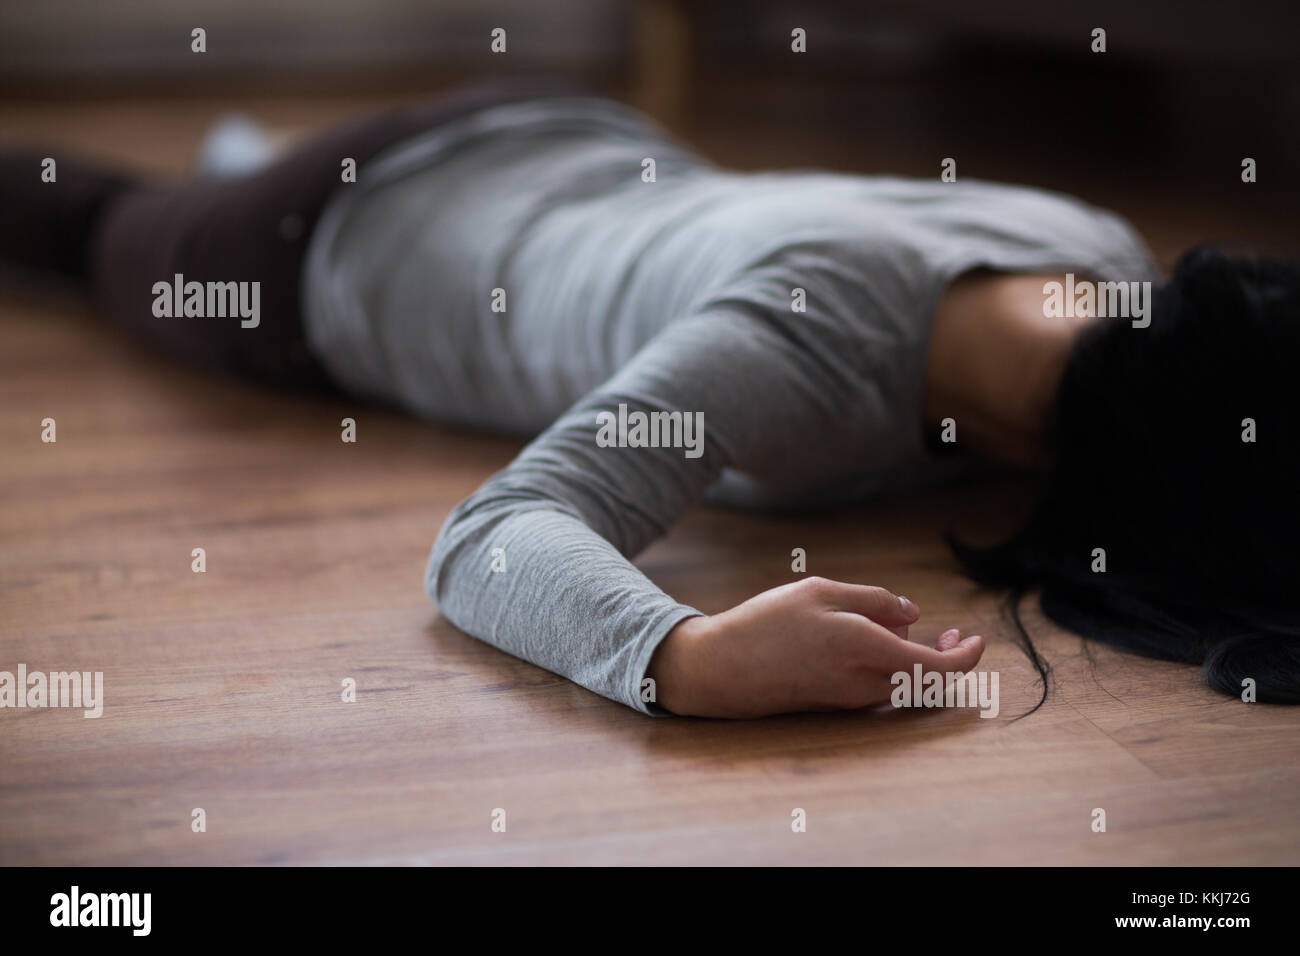 Donna morta corpo disteso sul pavimento in corrispondenza della scena del crimine Foto Stock